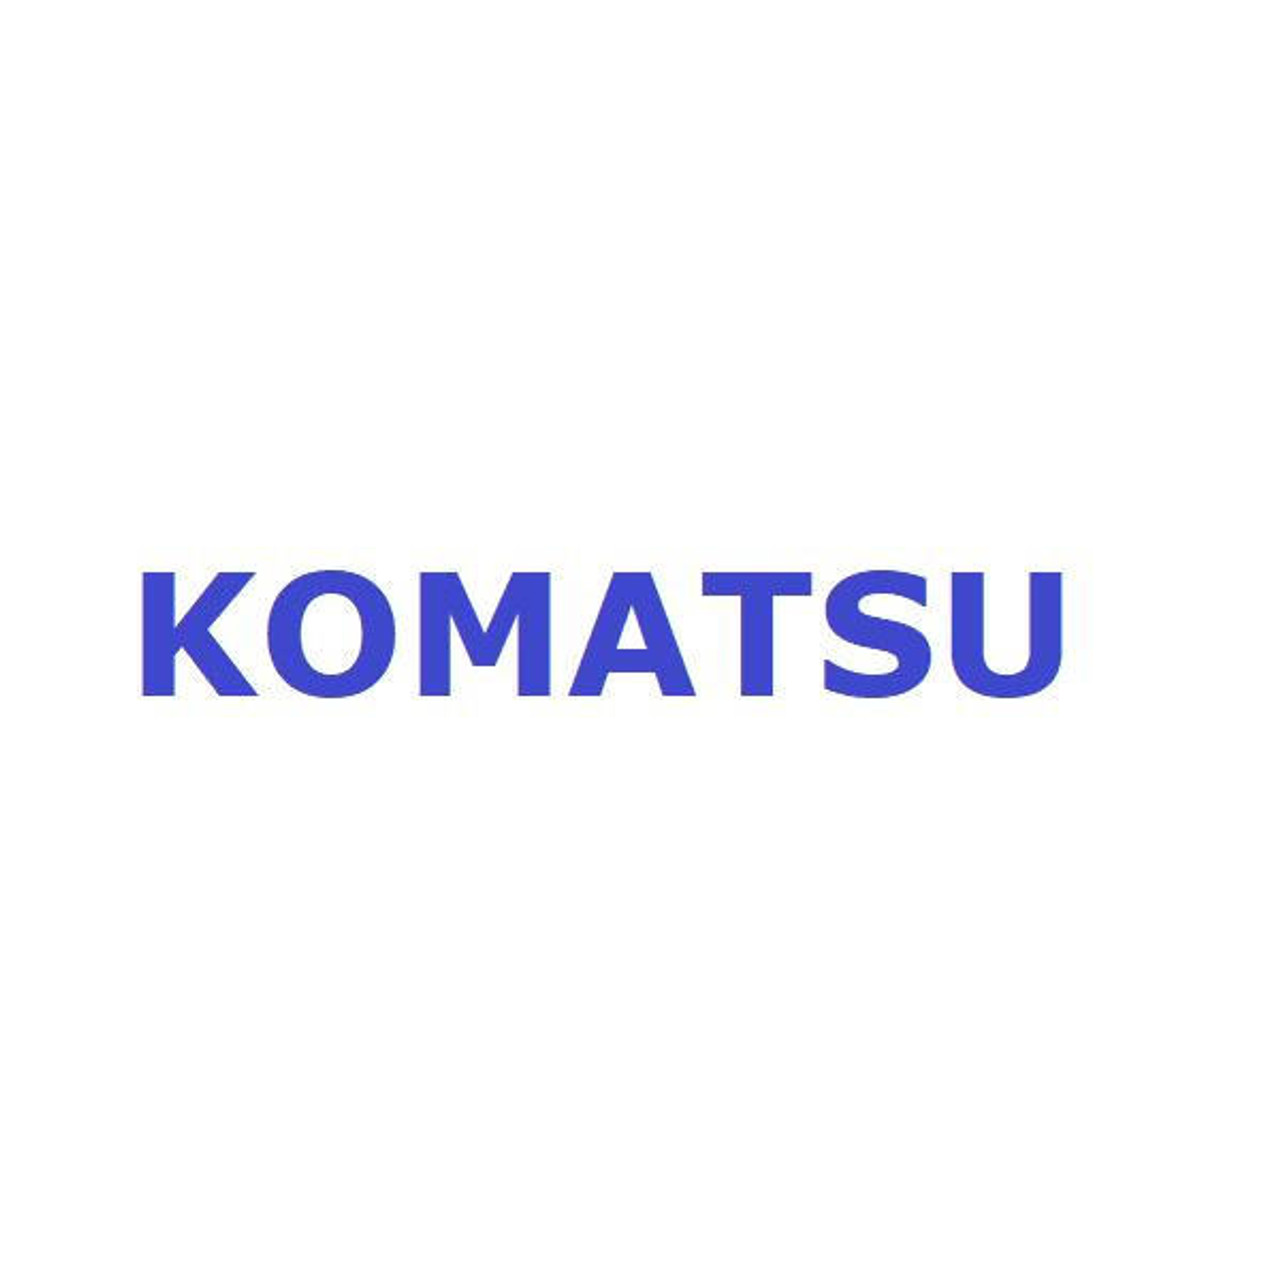 Komatsu Seal # 56B-50-14000K Seal Kit